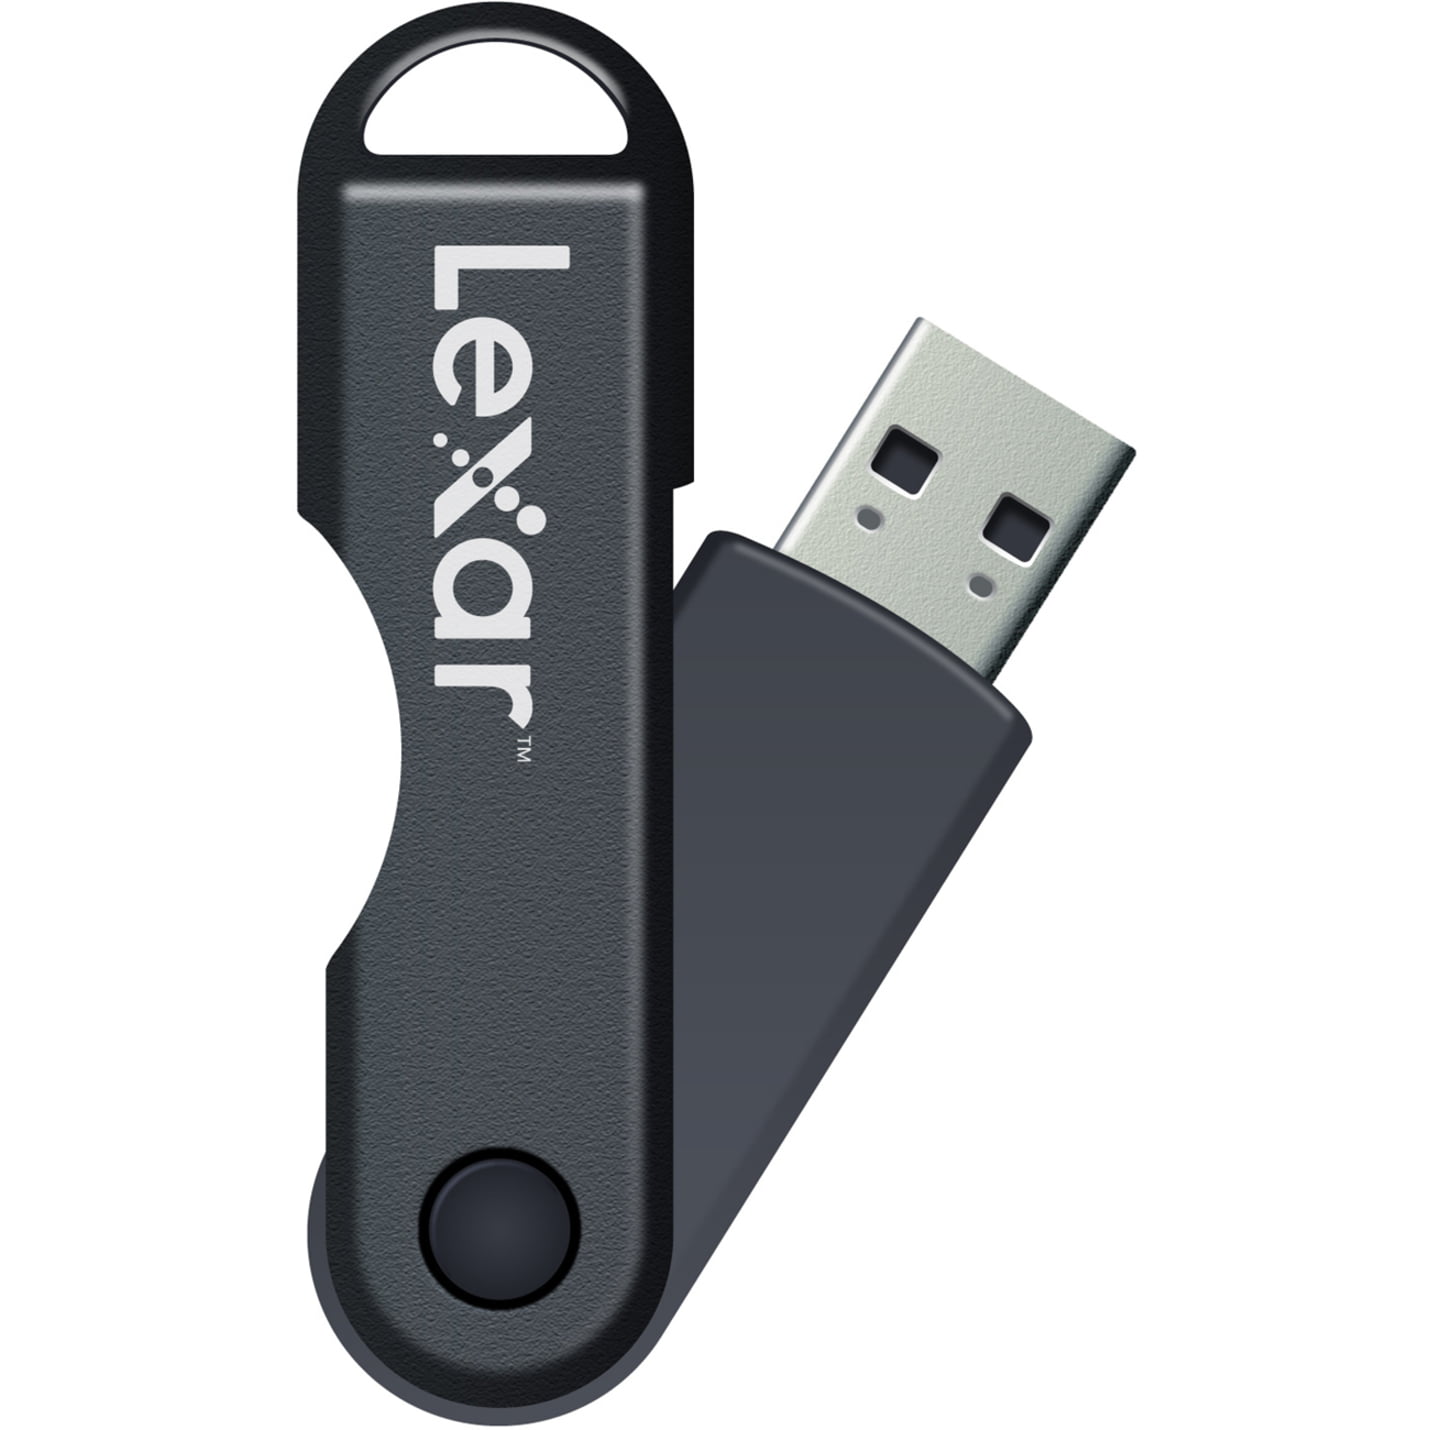 Lexar 32GB USB 2.0 Flash Drive - Walmart.com